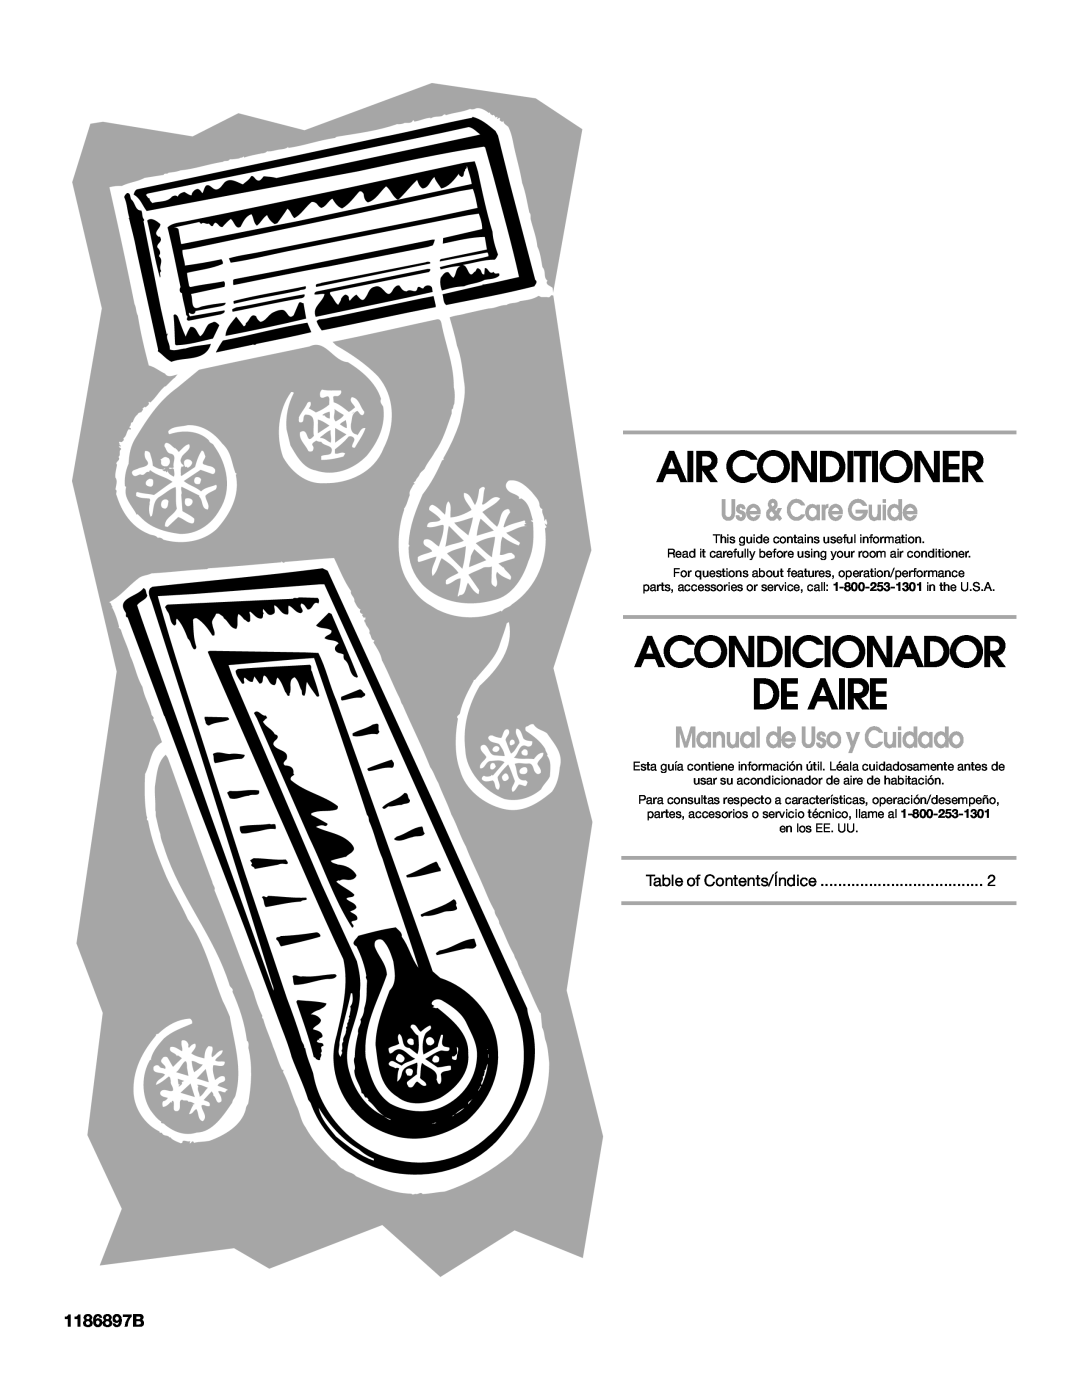 Whirlpool ACE082XP1 manual 1186897B, Air Conditioner, Acondicionador De Aire, Use & Care Guide, Manual de Uso y Cuidado 